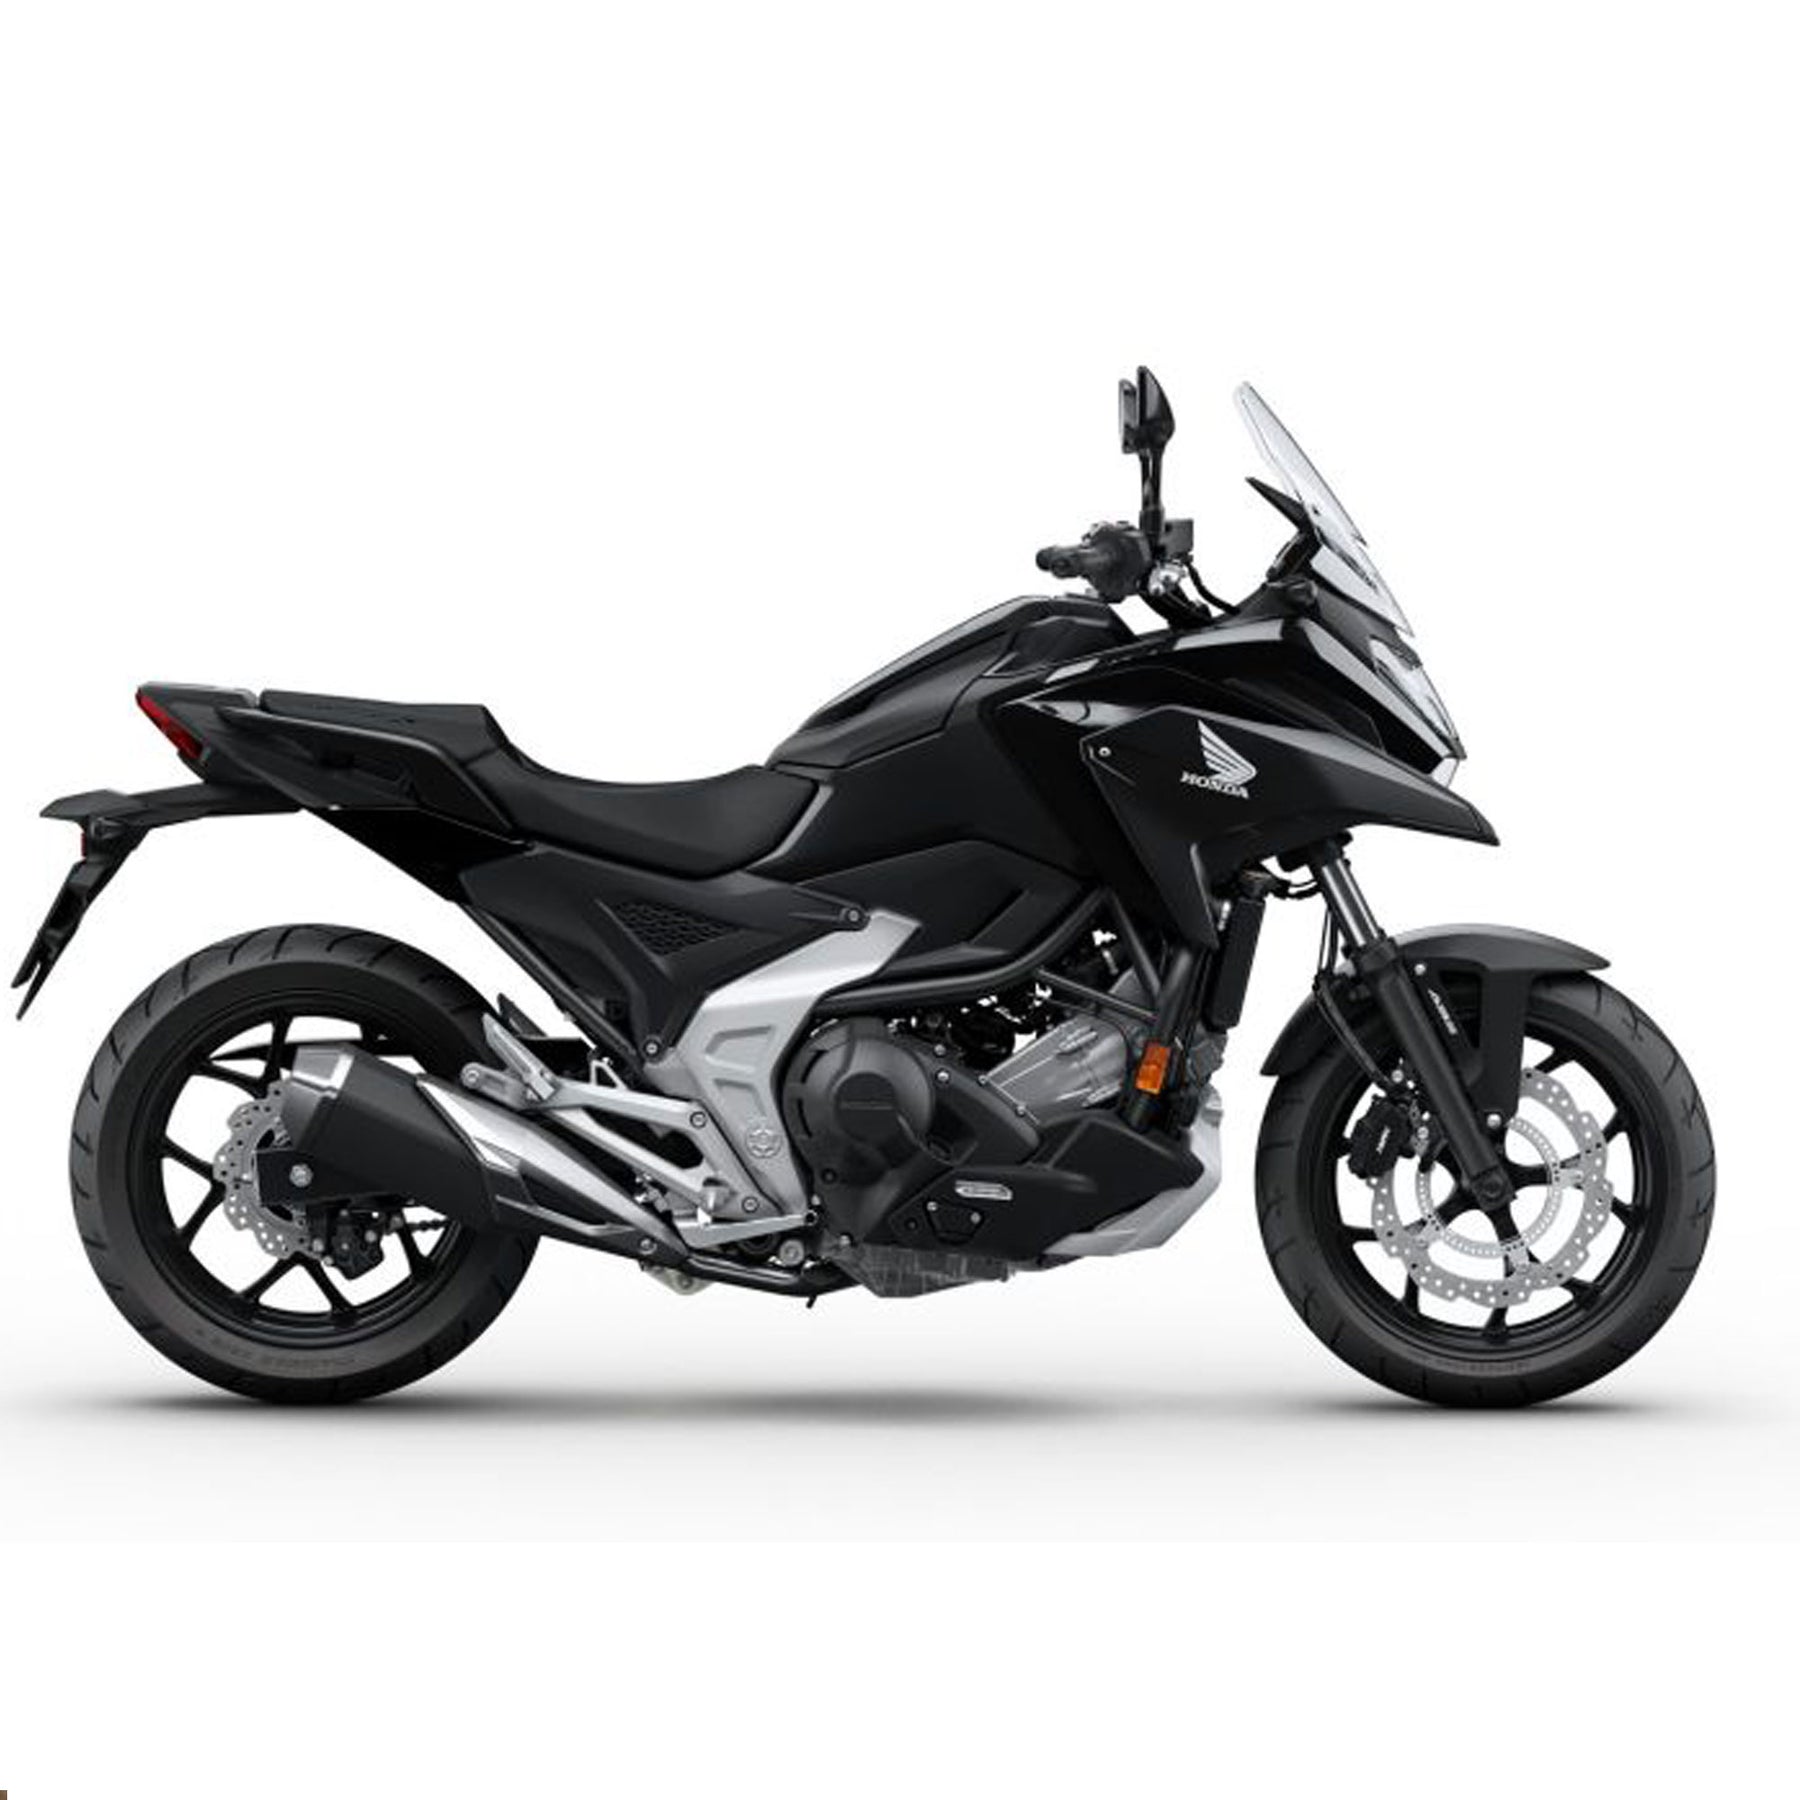 New Honda Bikes | Honda of Bournemouth | NC750X